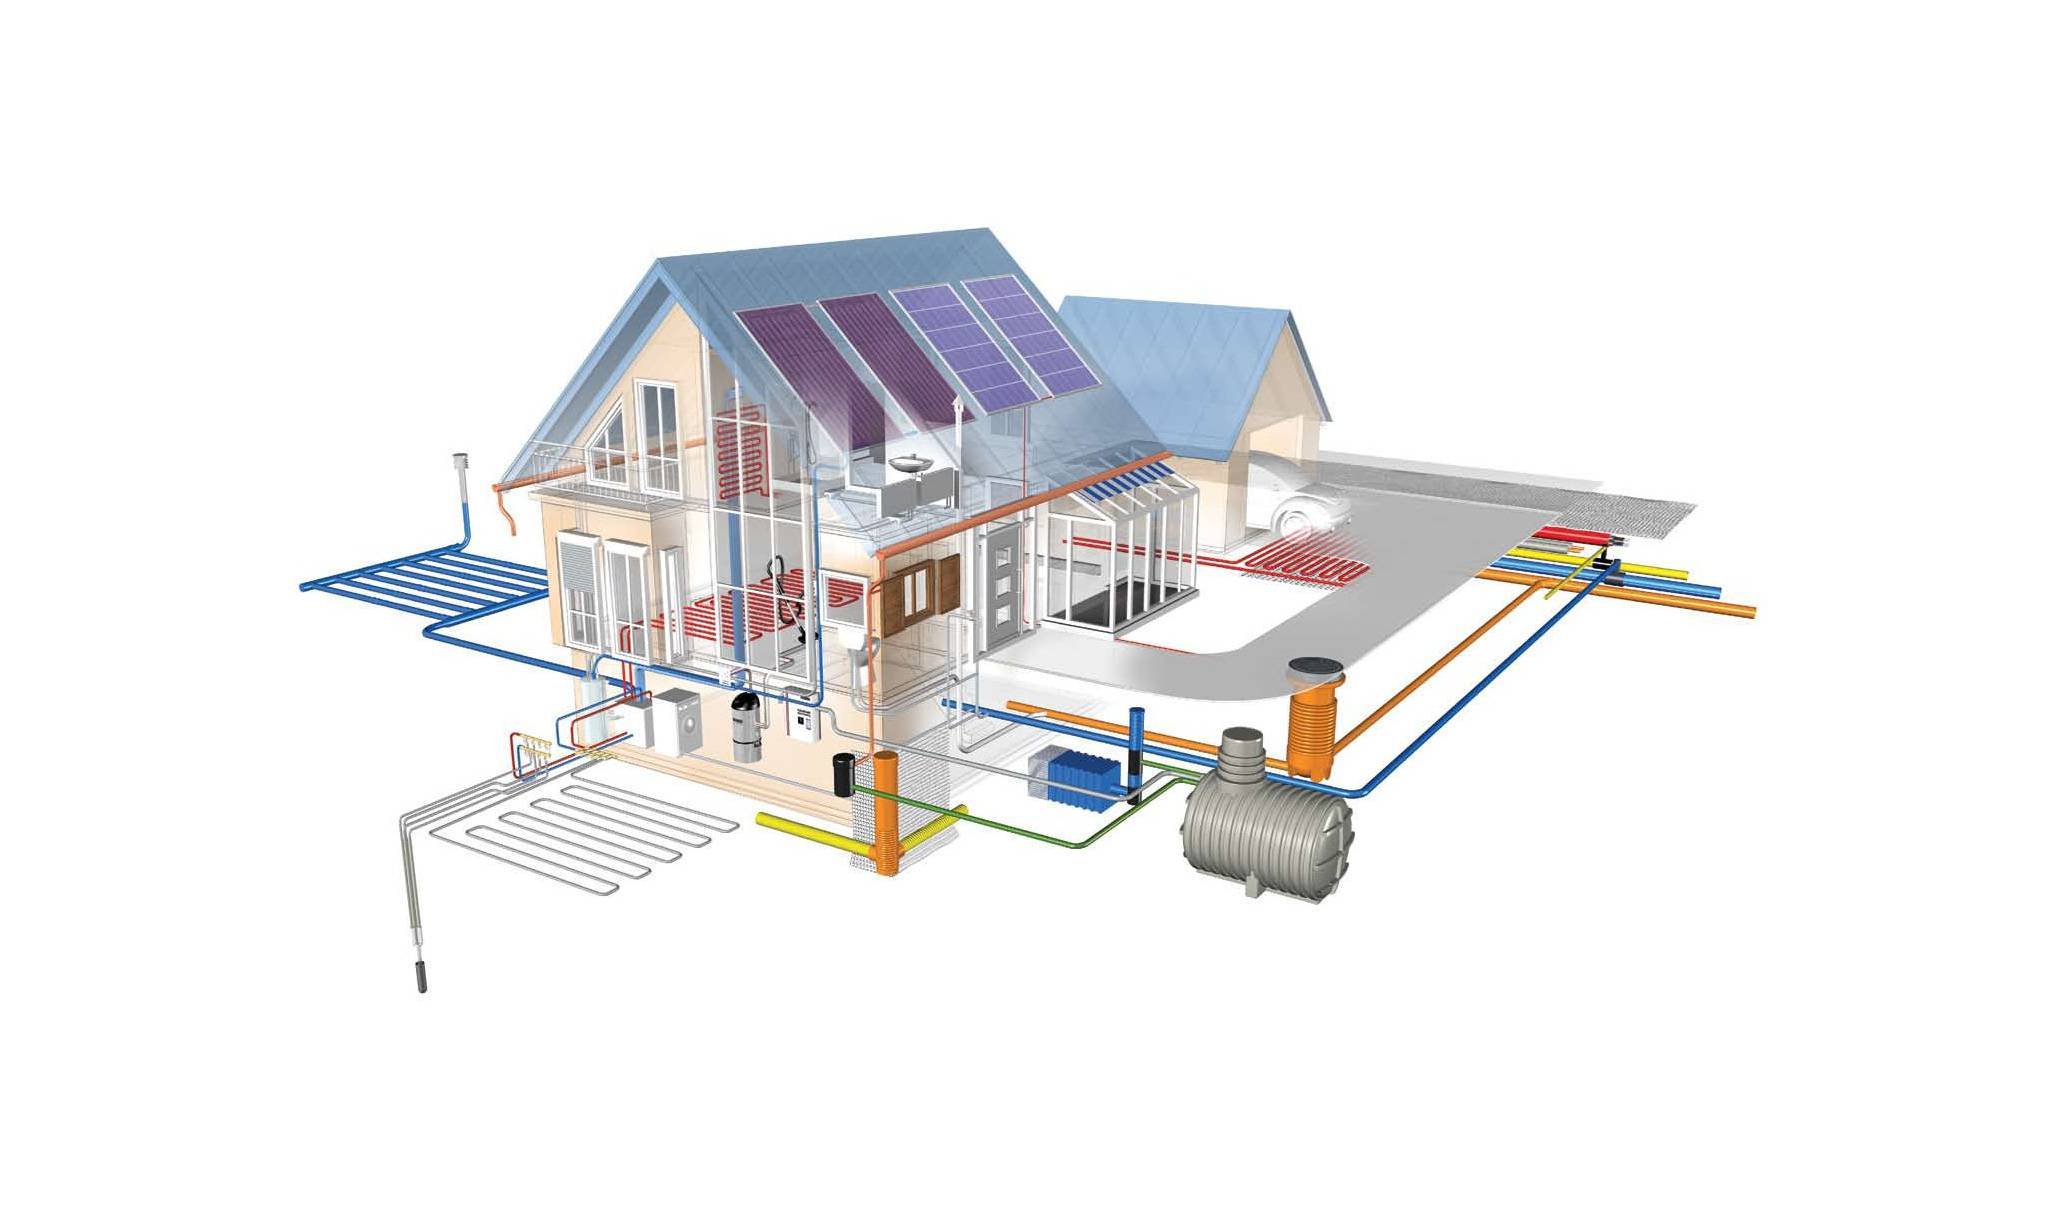 Отопление через умный дом: виды систем отопления, способы управления системой, принцип работы